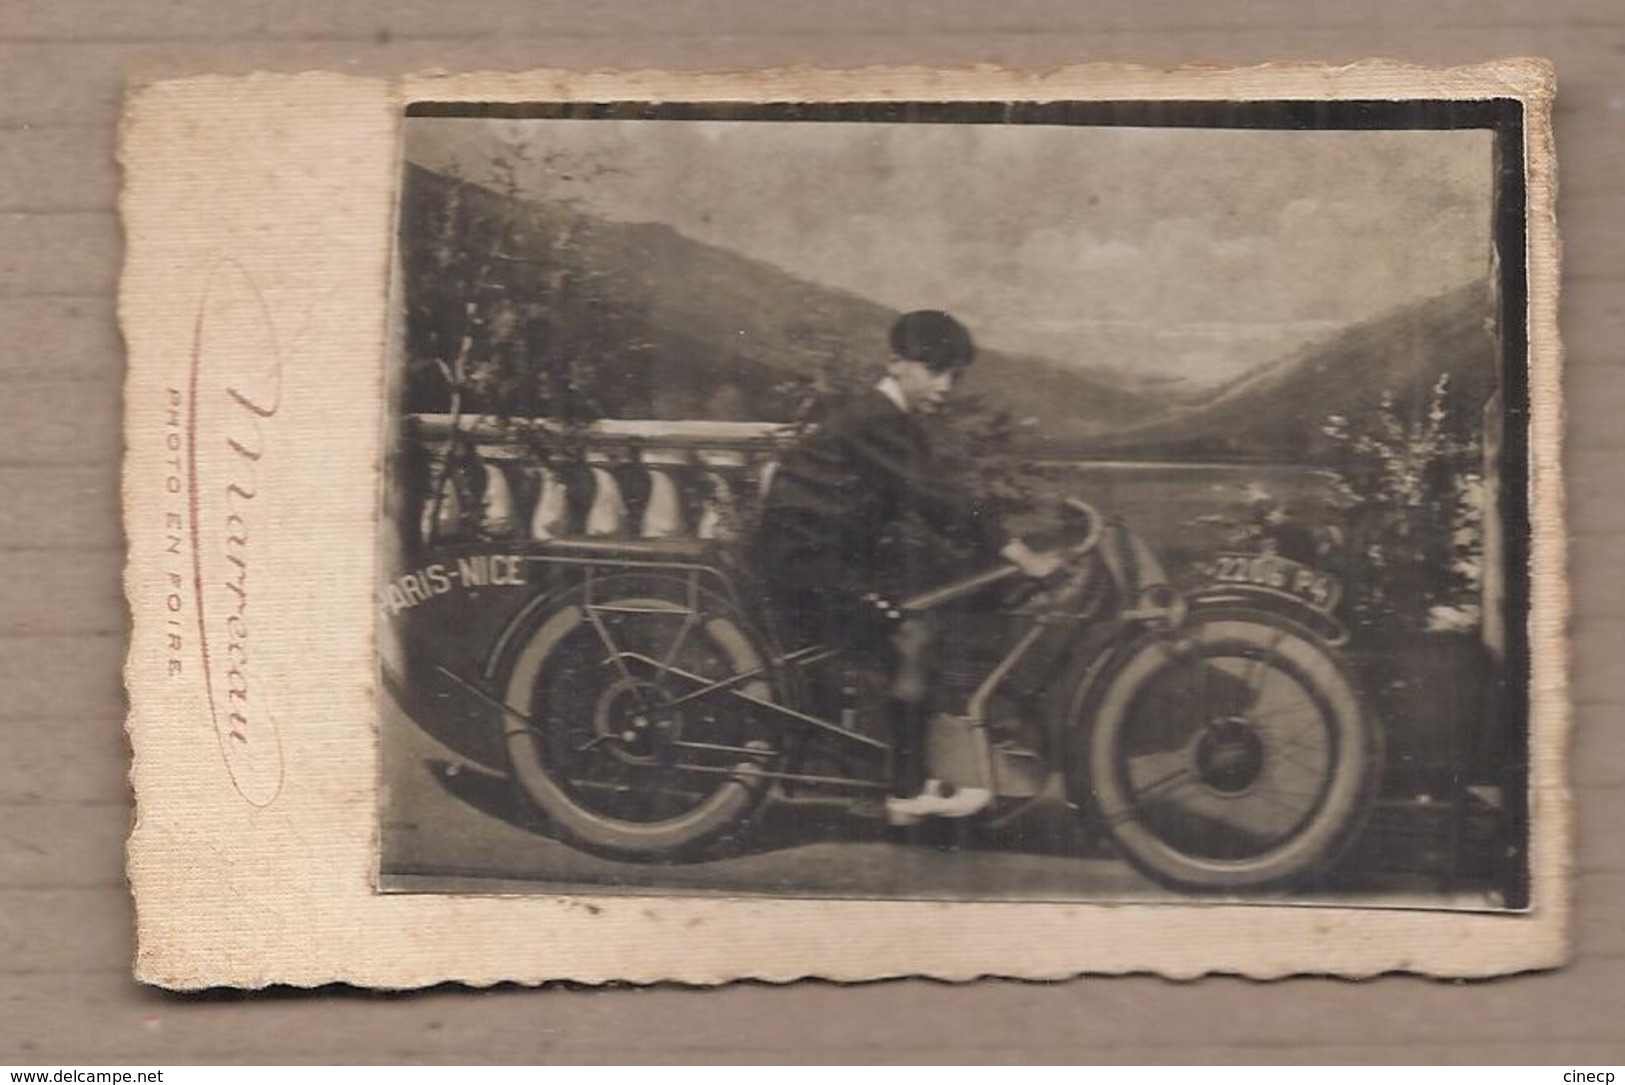 PHOTO MONTAGE MOTOCYCLETTE - Jeune Garçon Sur GROS PLAN Moto Devant Paysage PARIS NICE Photo En Foire - Motos